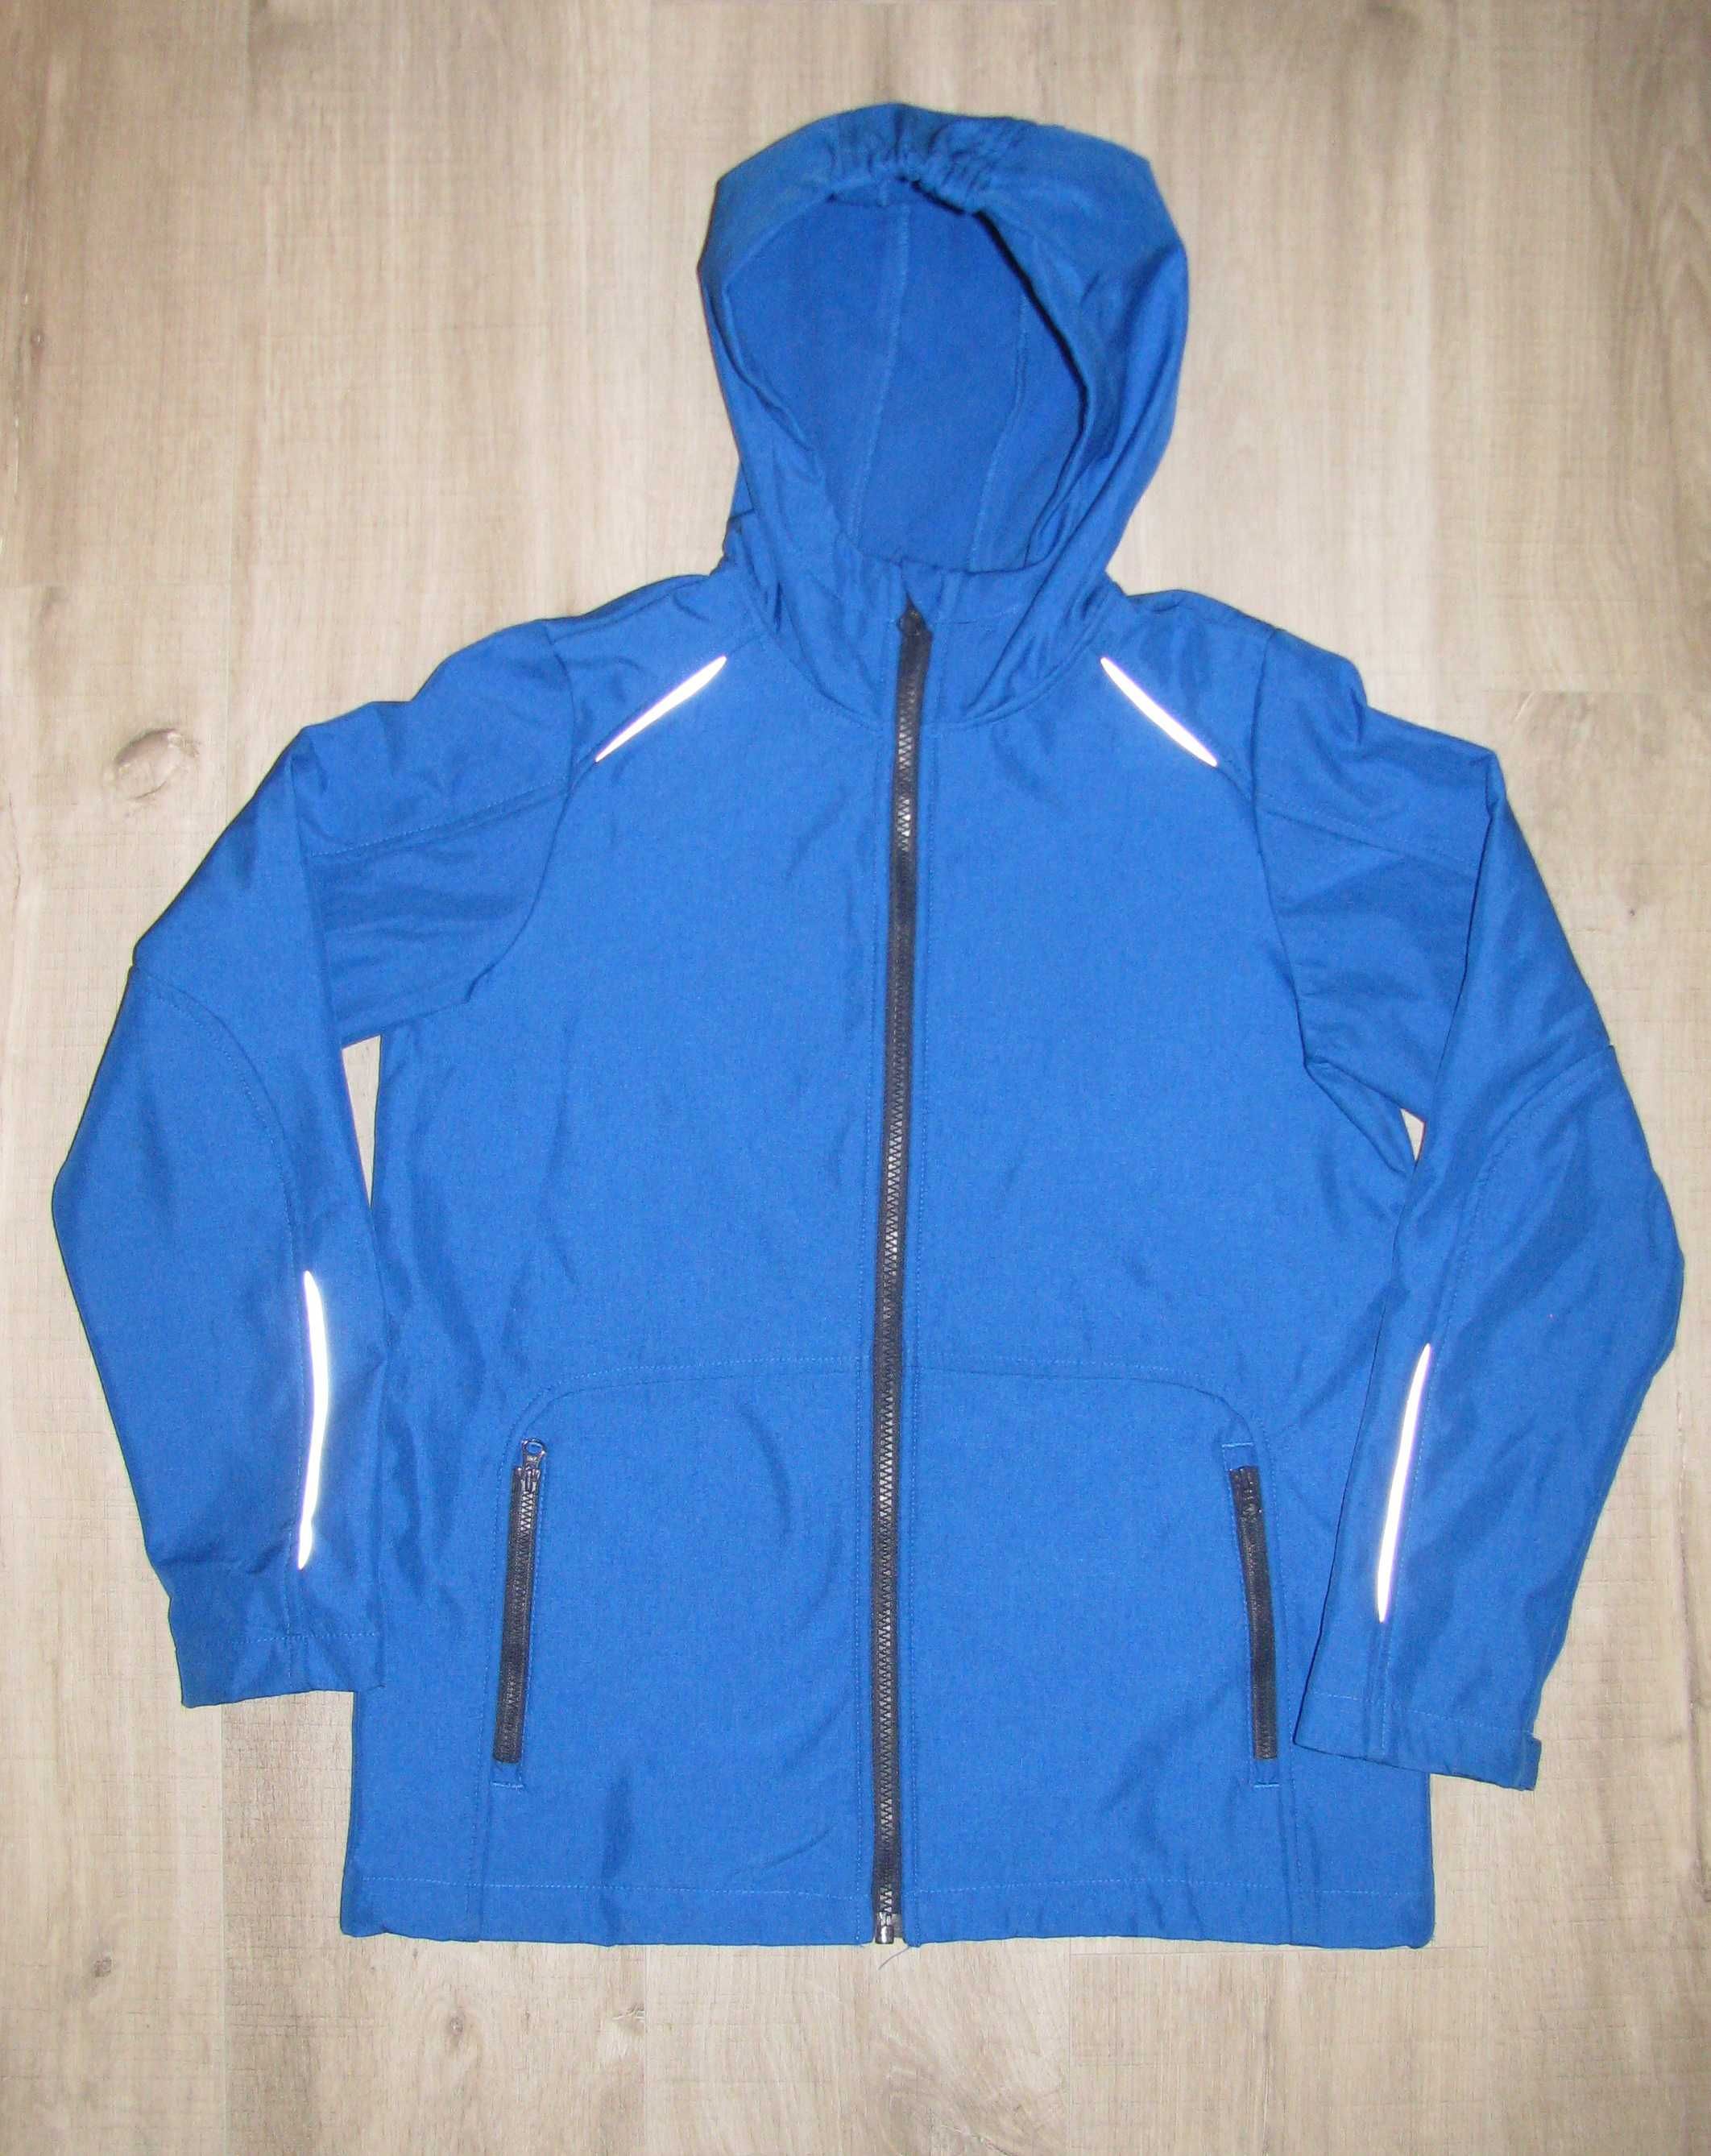 Продам куртку Crivit (Германия)  для мальчика 10-12 лет